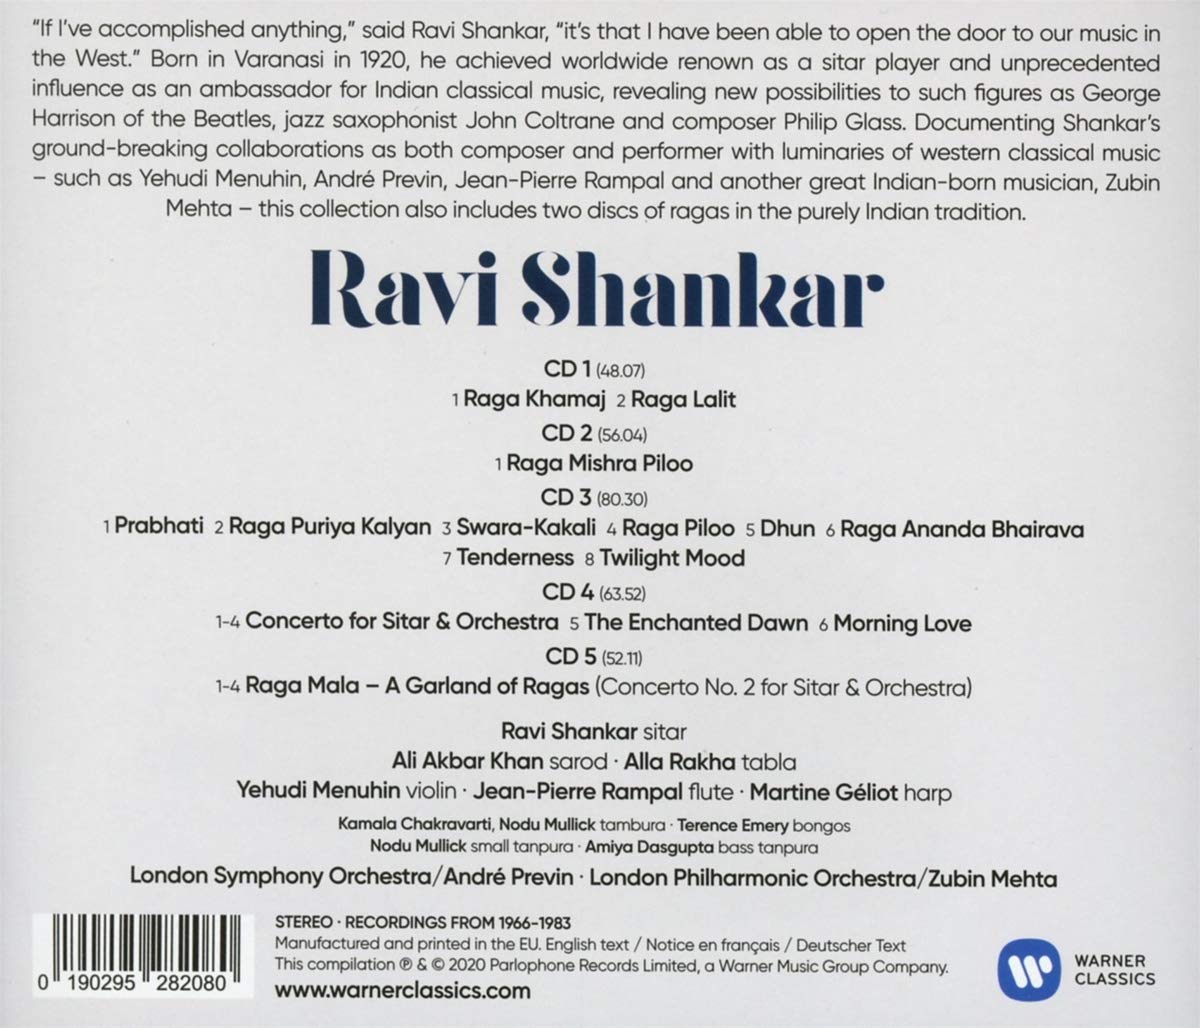 RAVI SHANKAR EDITION (5 CDS)